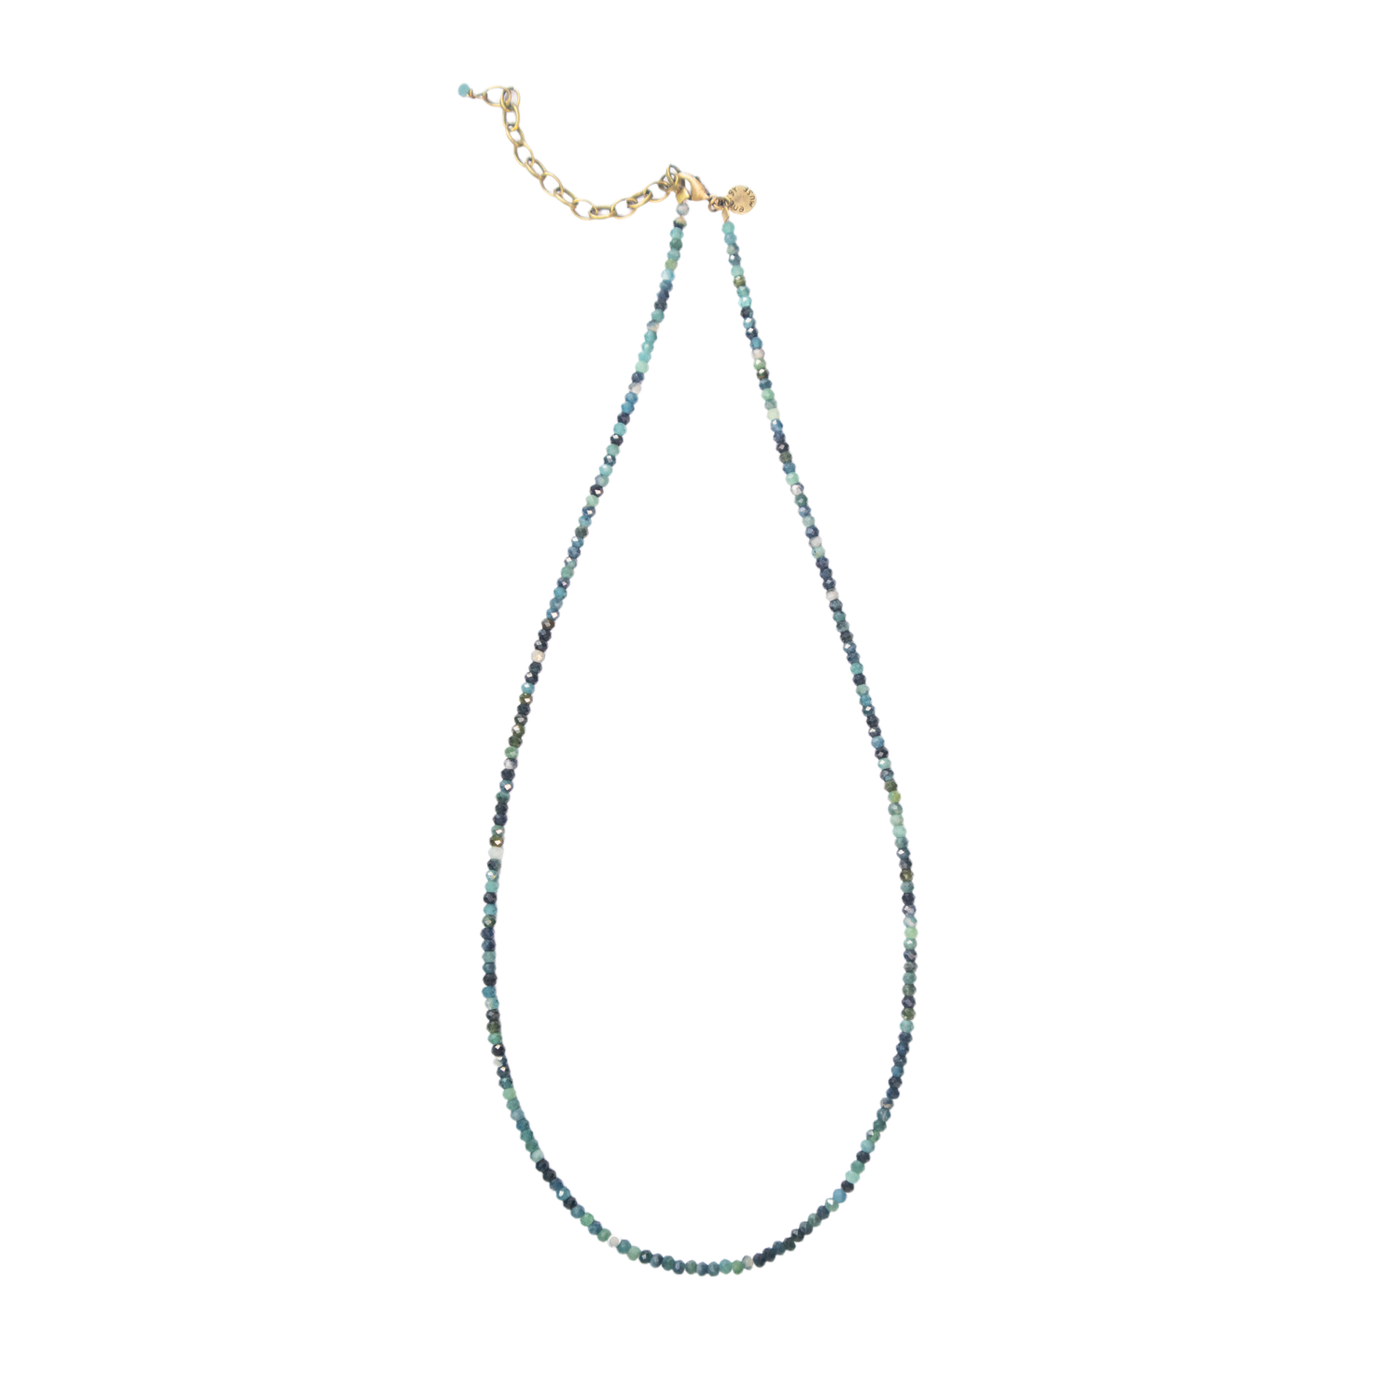 Blue Tourmaline Convertible Bracelet-Necklace